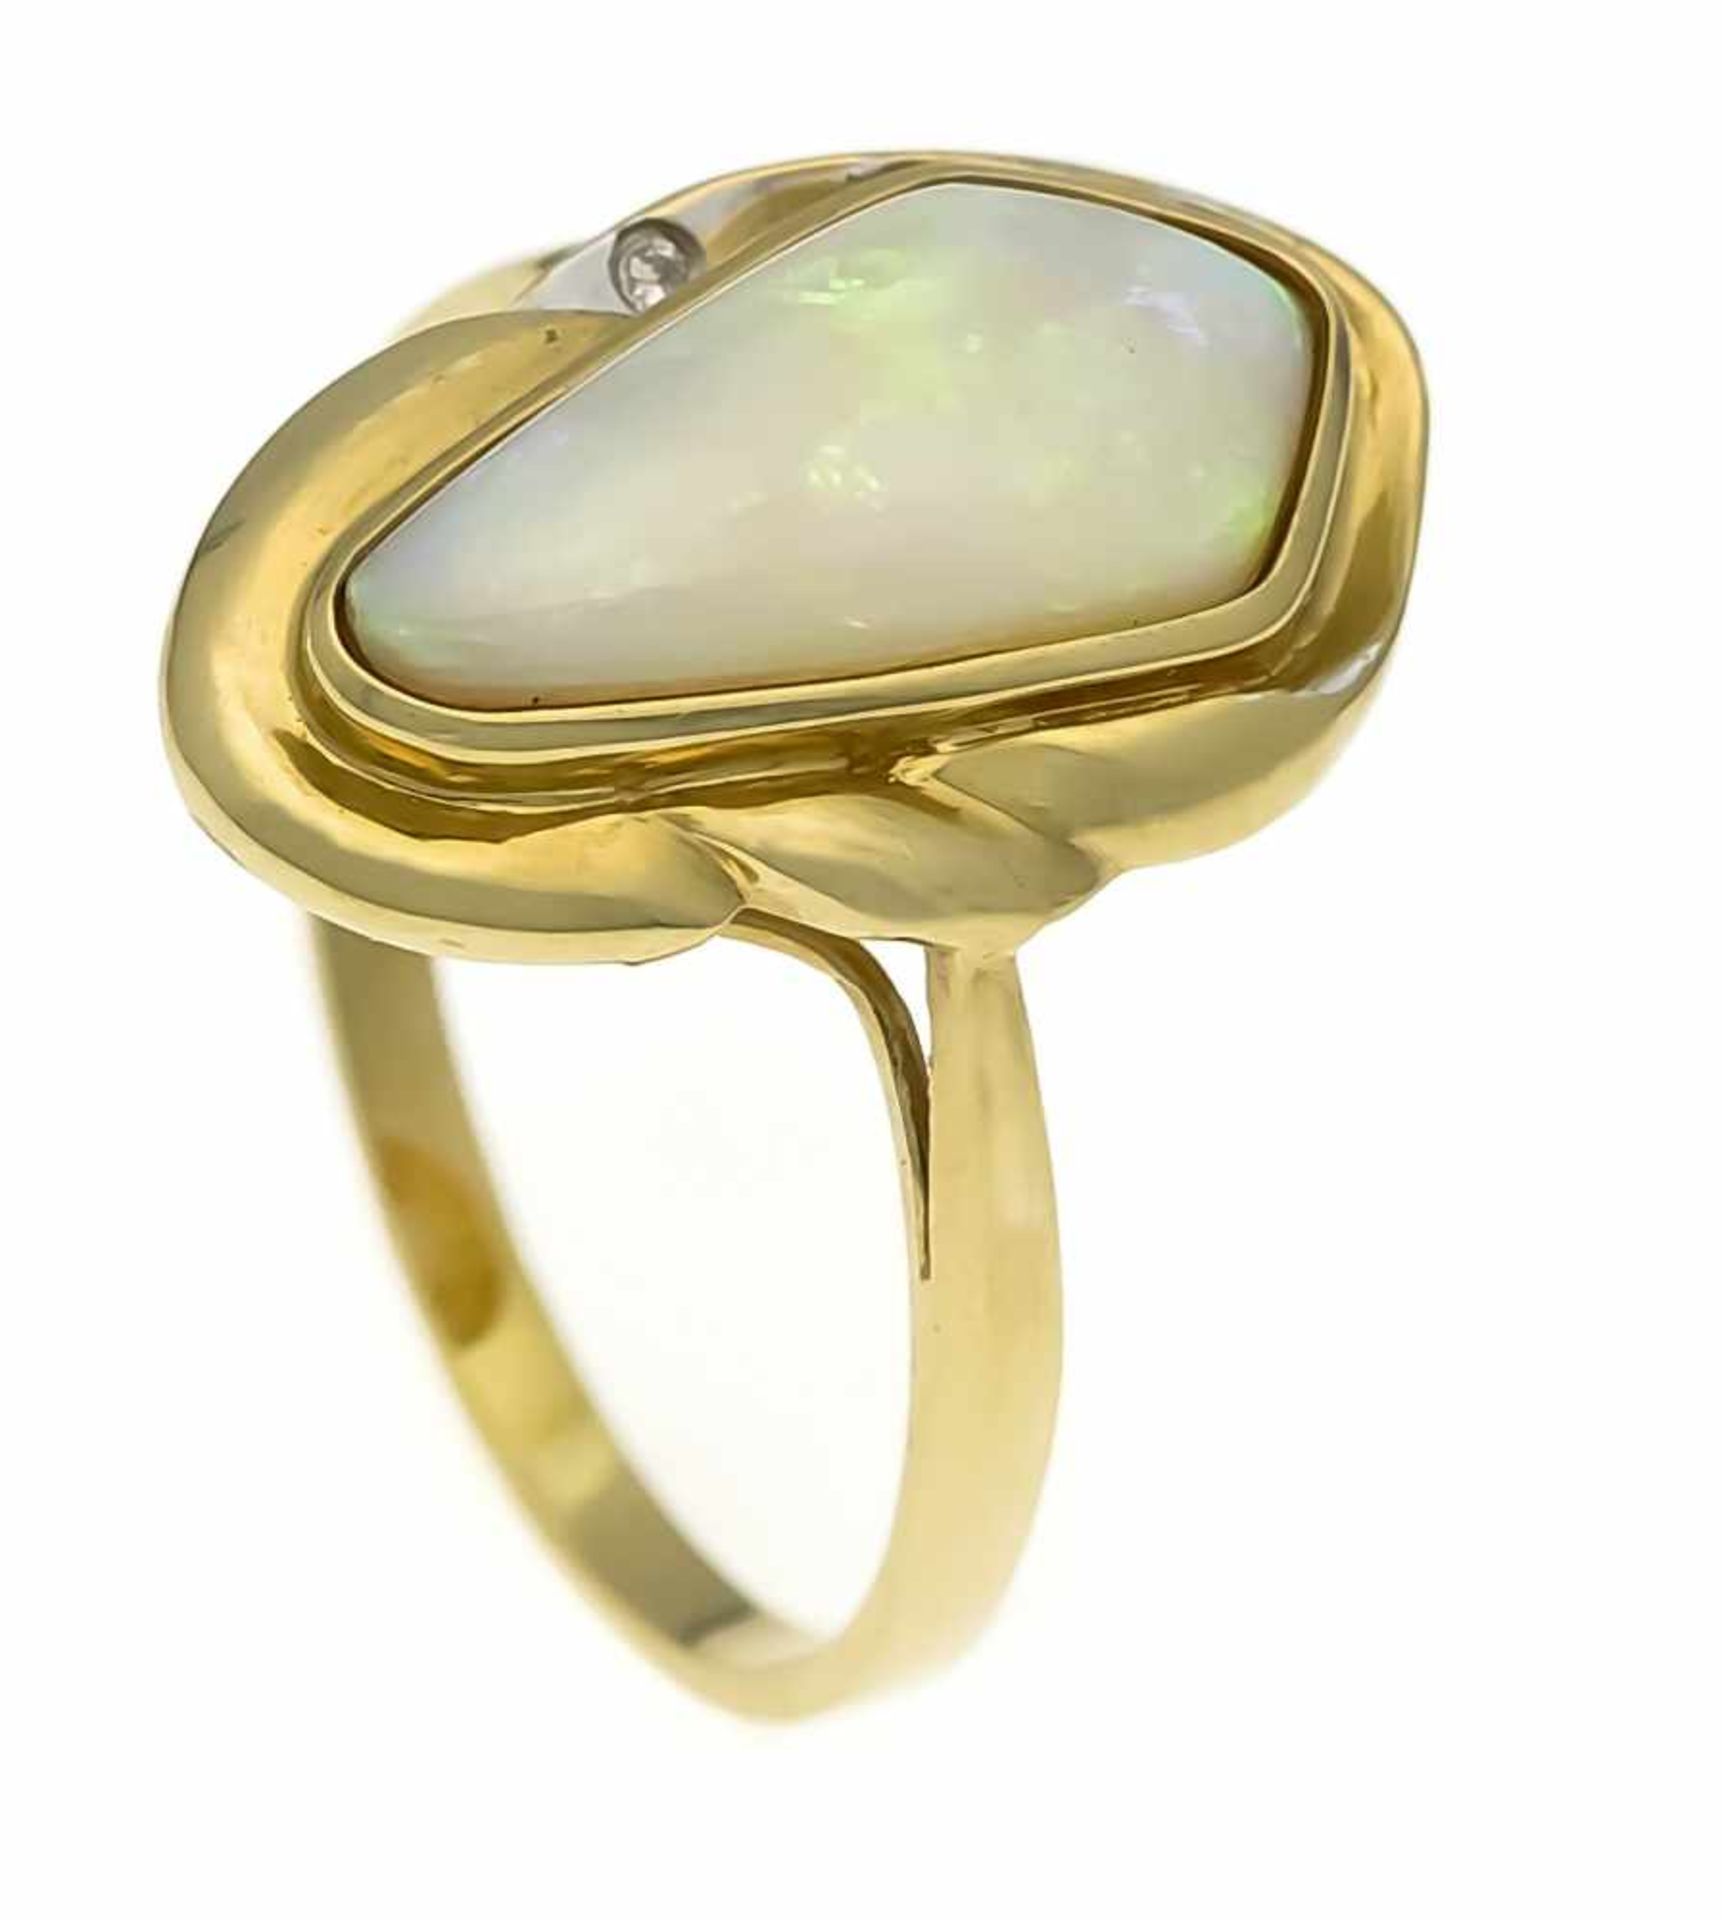 Opal-Brillant-Ring GG 585/000 mit einem Milchopalcabochon 16 x 8 mm und einem Brillanten0,01 ct W/